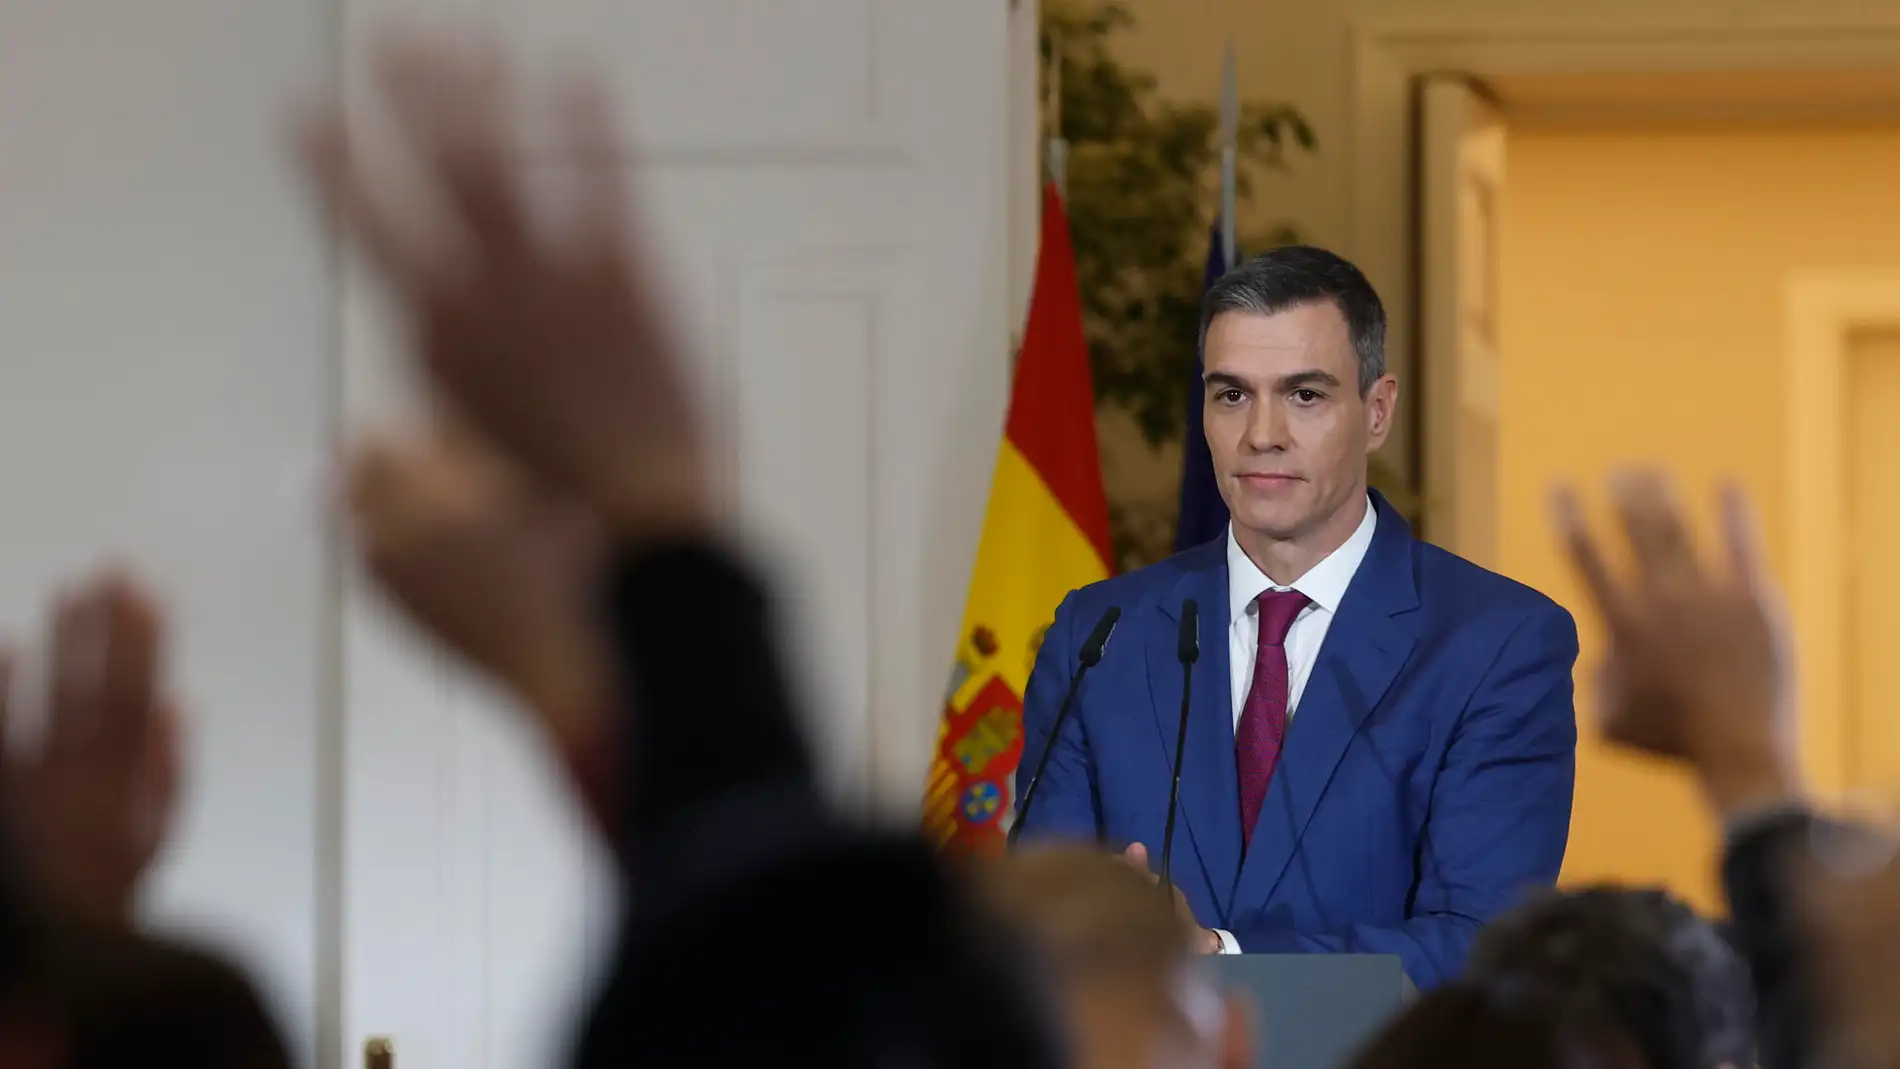 Los economistas tachan de "populistas" las medidas de Pedro Sánchez: "No van al fondo de lo que necesita el país" 